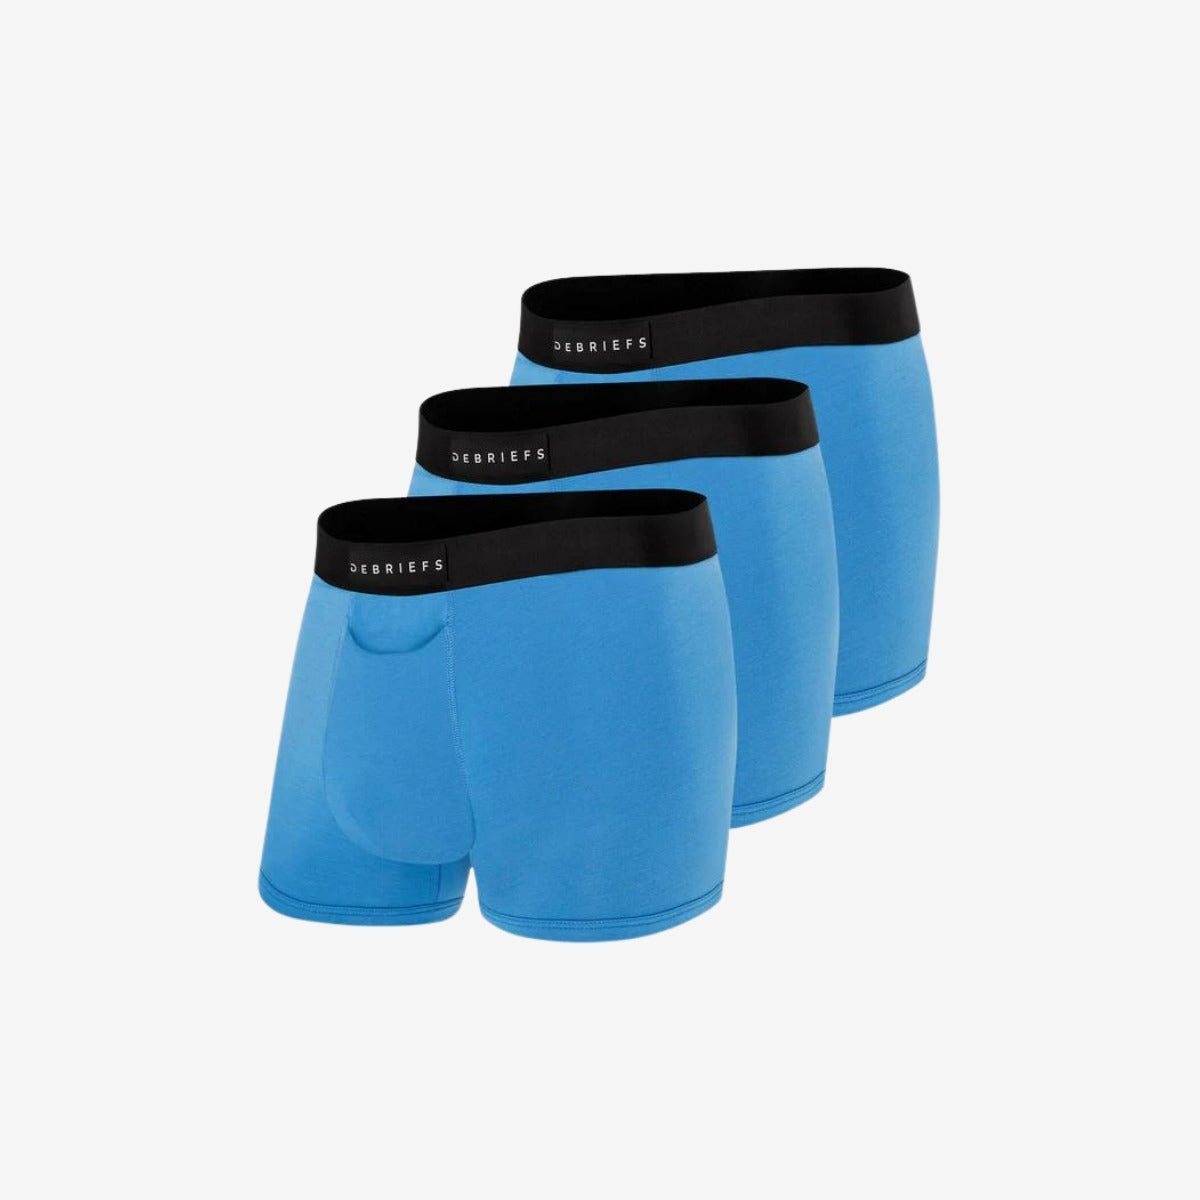 Mens Trunks Underwear Australia 3 Pack - All Blue